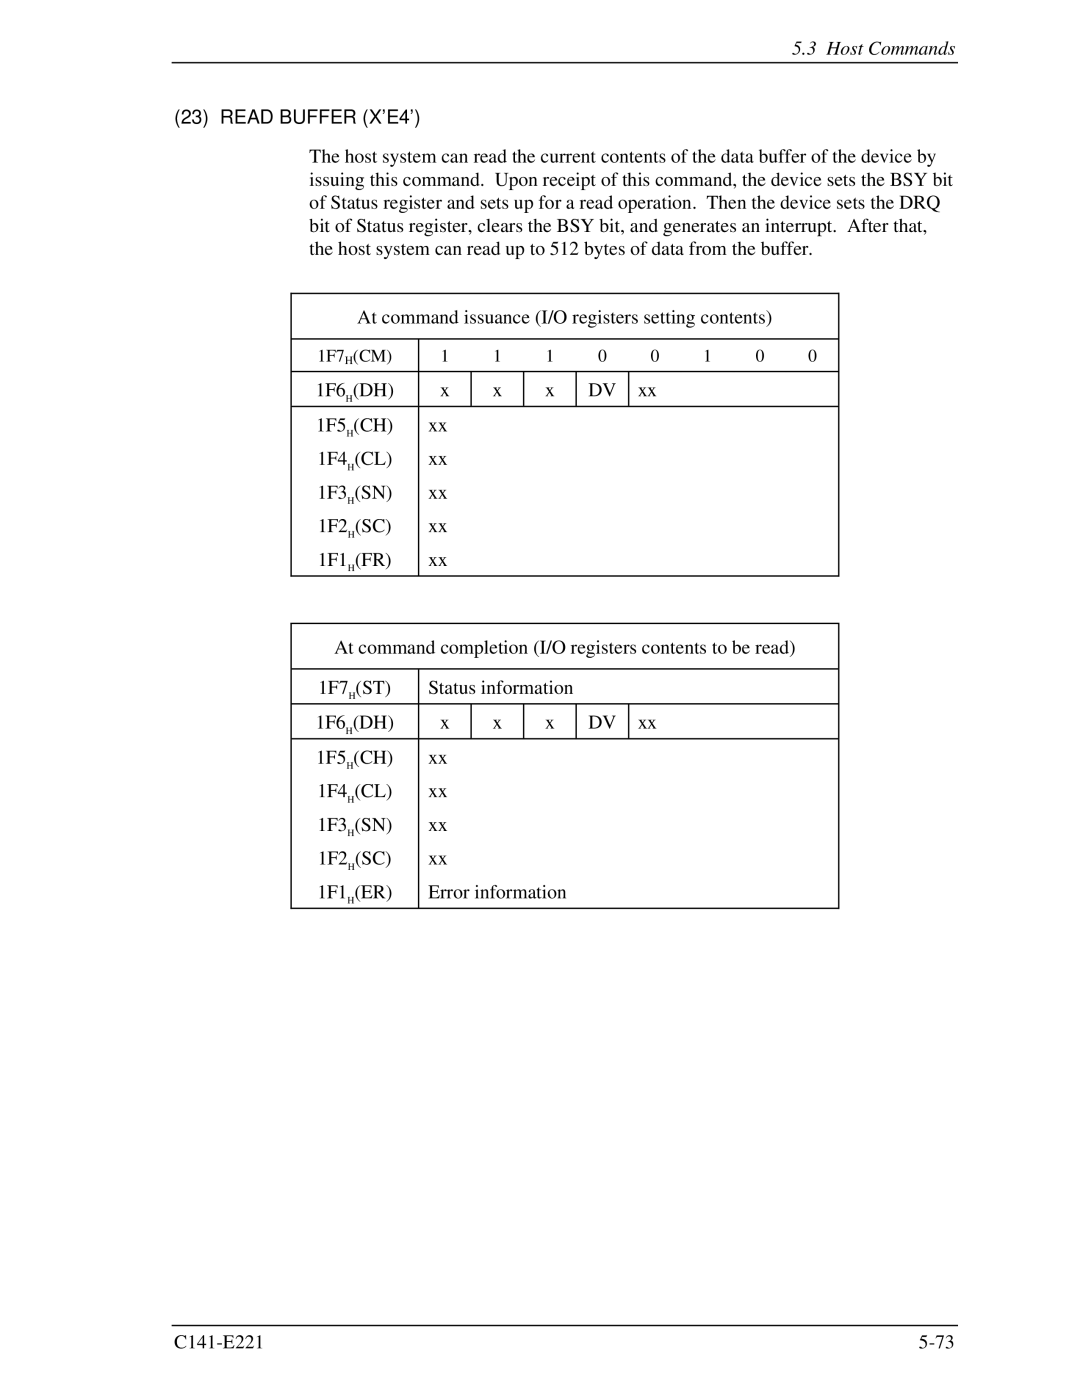 Fujitsu MHV2040AS, MHV2080AS, MHV2060AS manual Read Buffer X’E4’ 